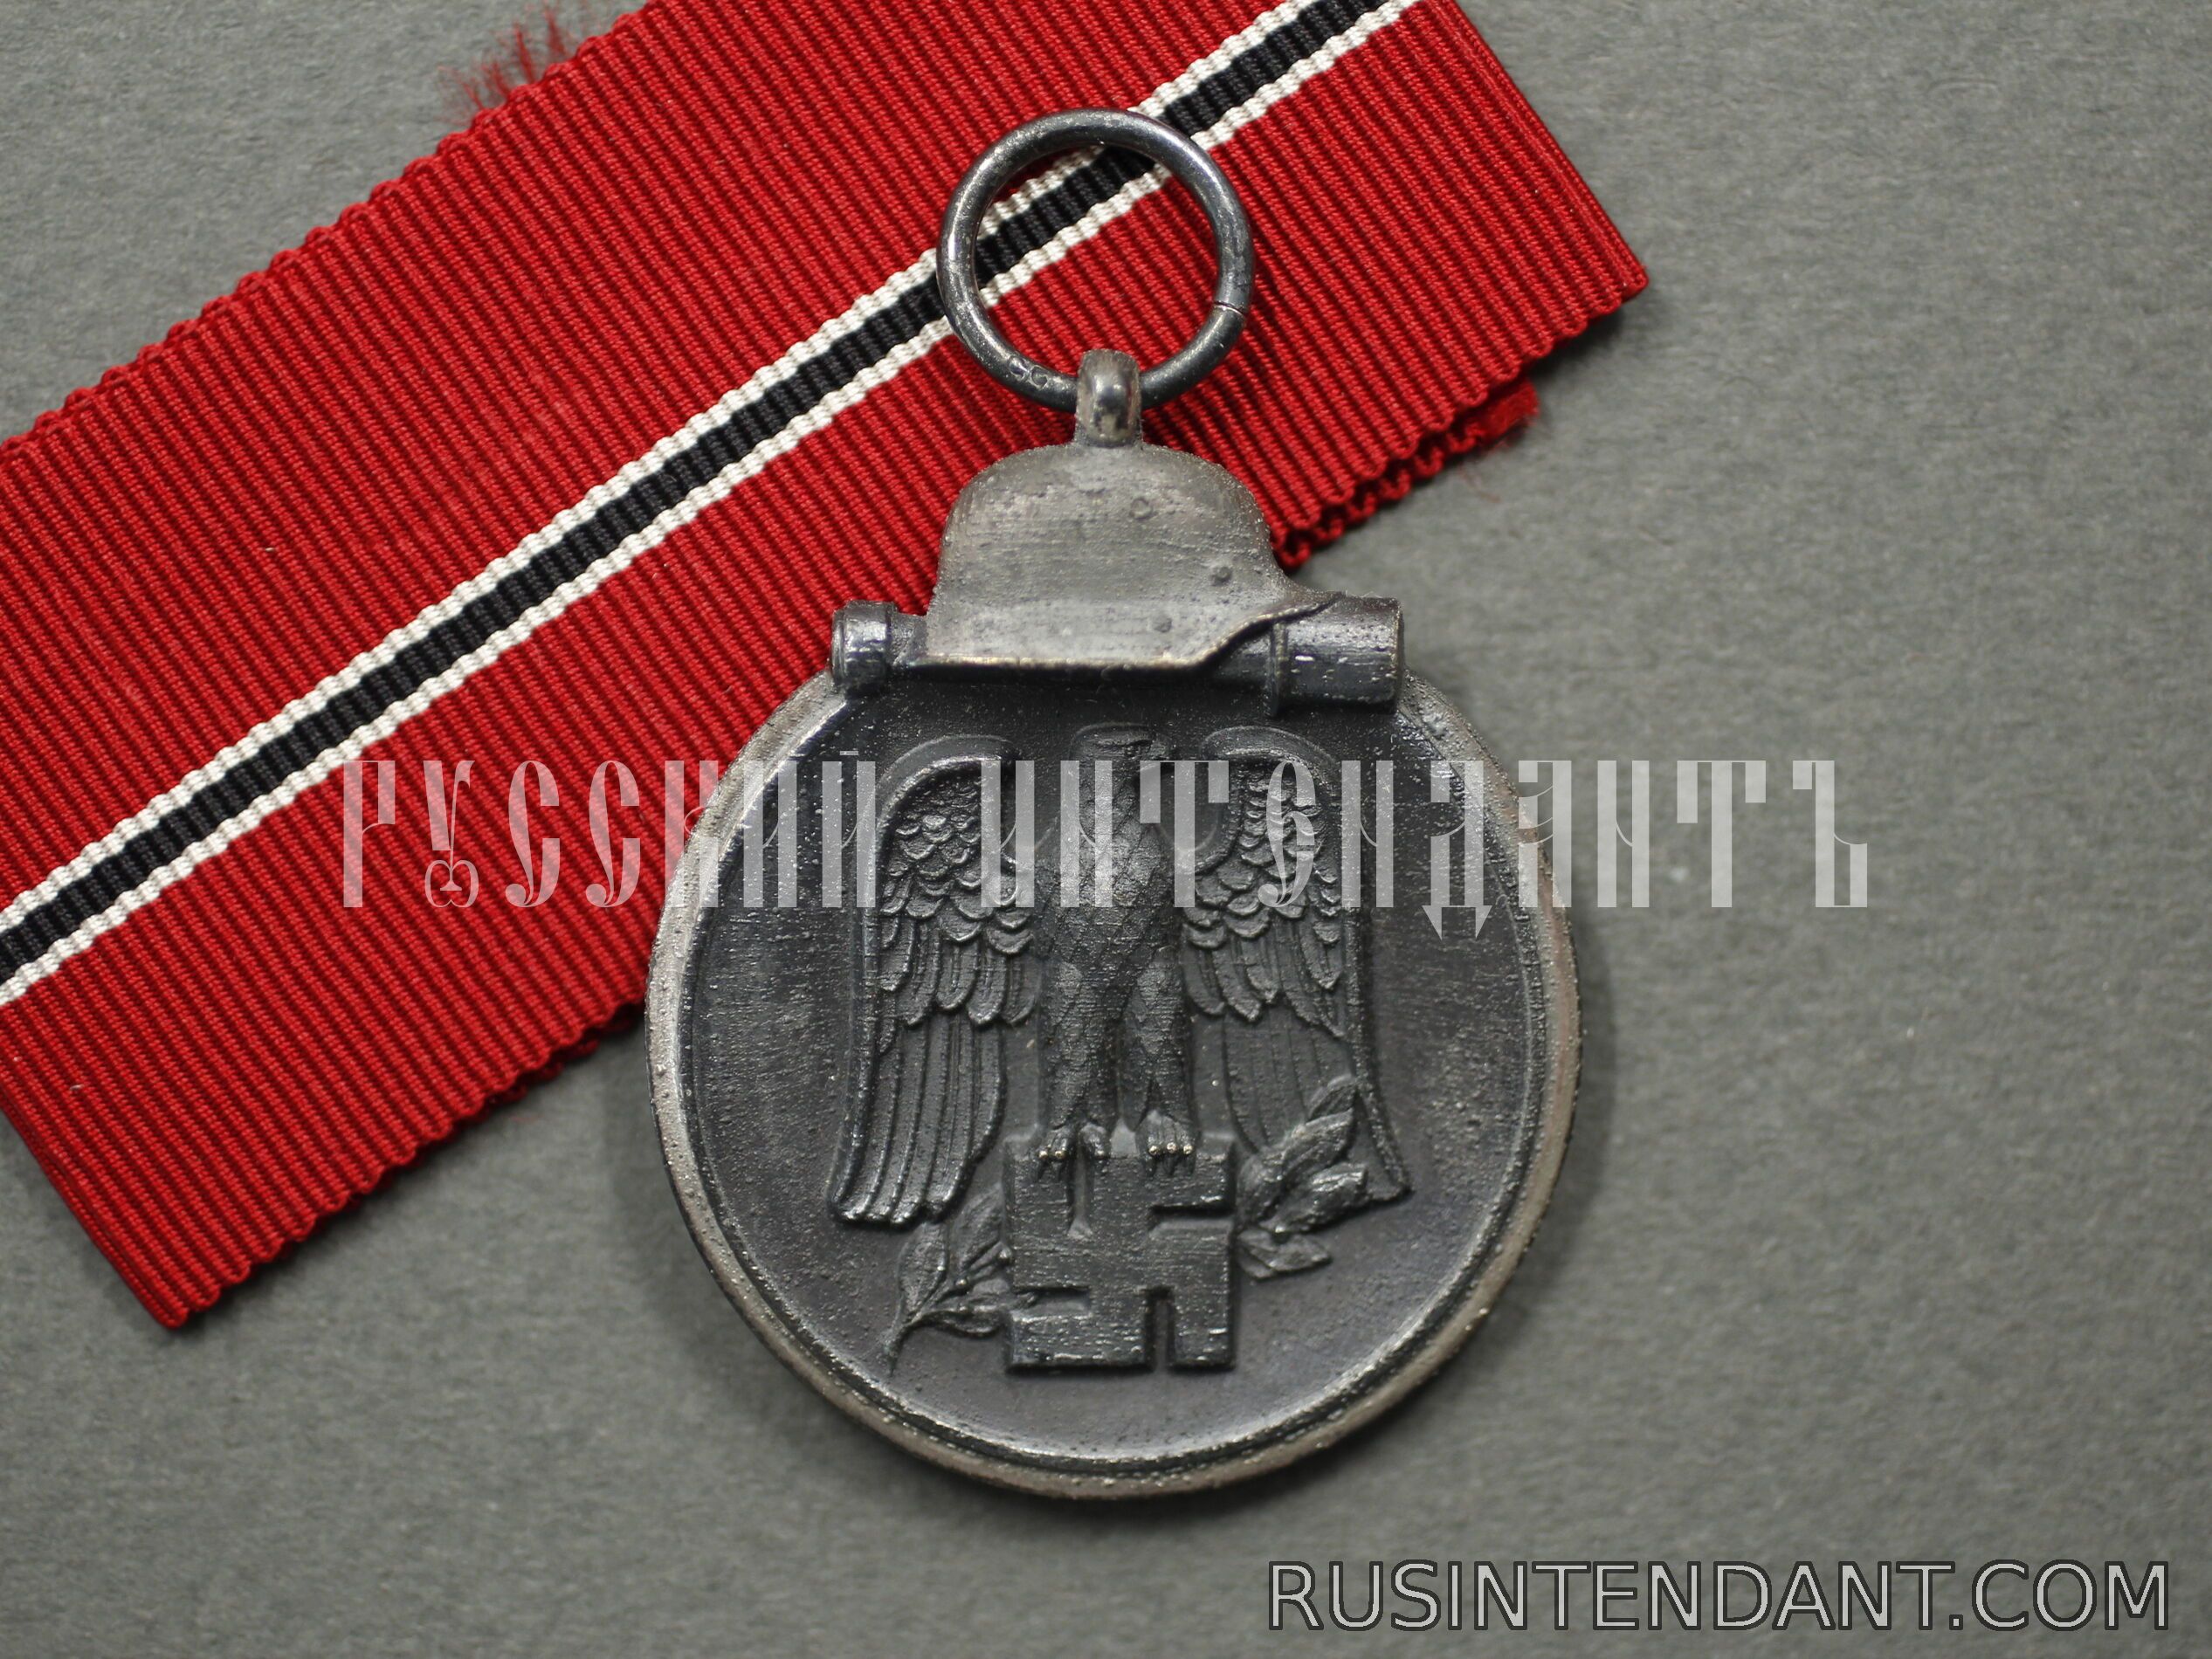 Фото 2: Медаль «За зимнее сражение на Востоке 1941/42» 